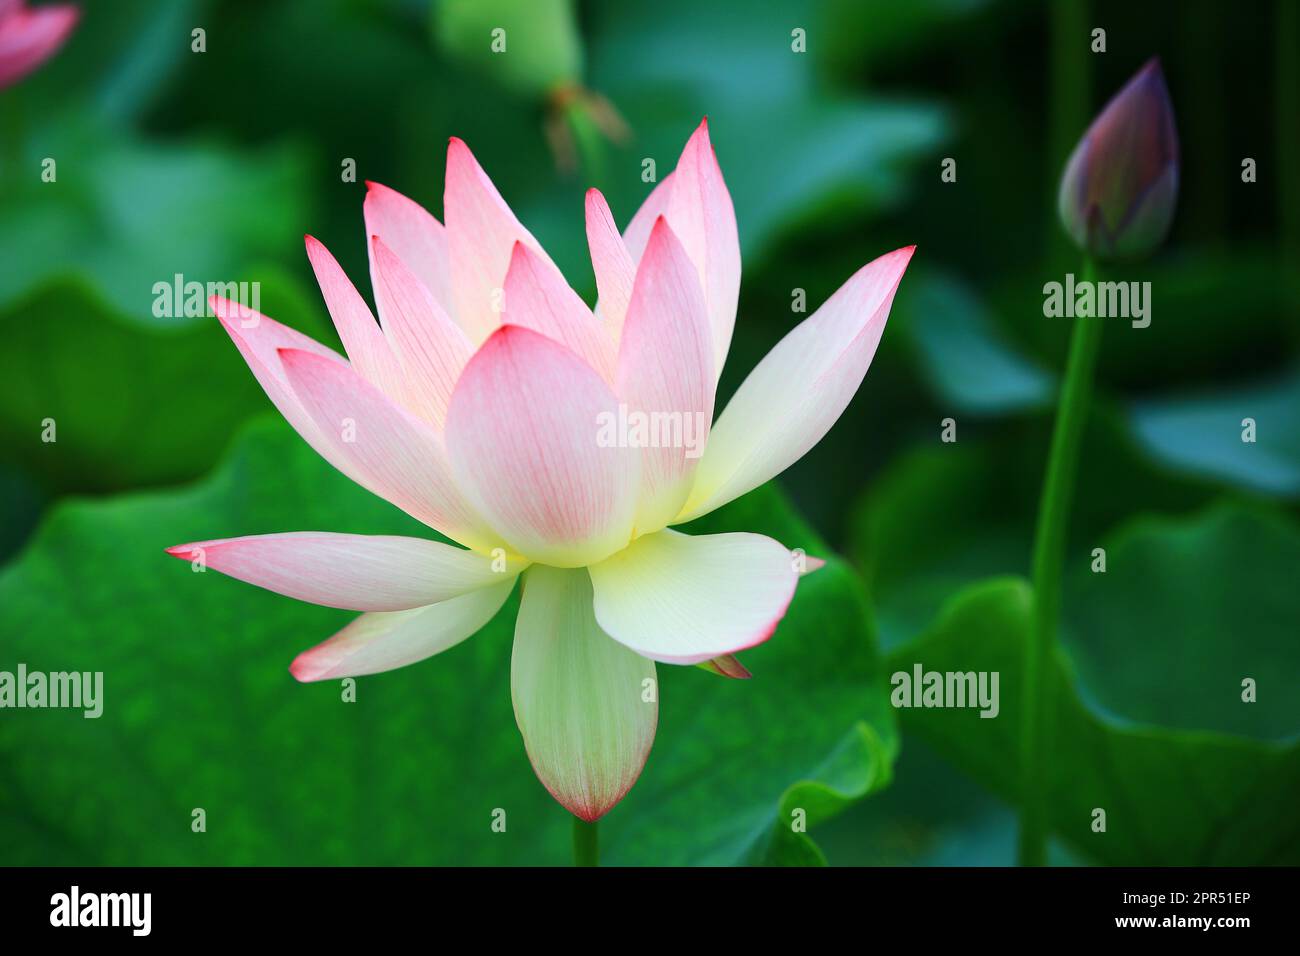 Fiore di loto e germoglio con foglie verdi, primo piano di bel rosa con fiore di loto bianco che fiorisce nello stagno Foto Stock